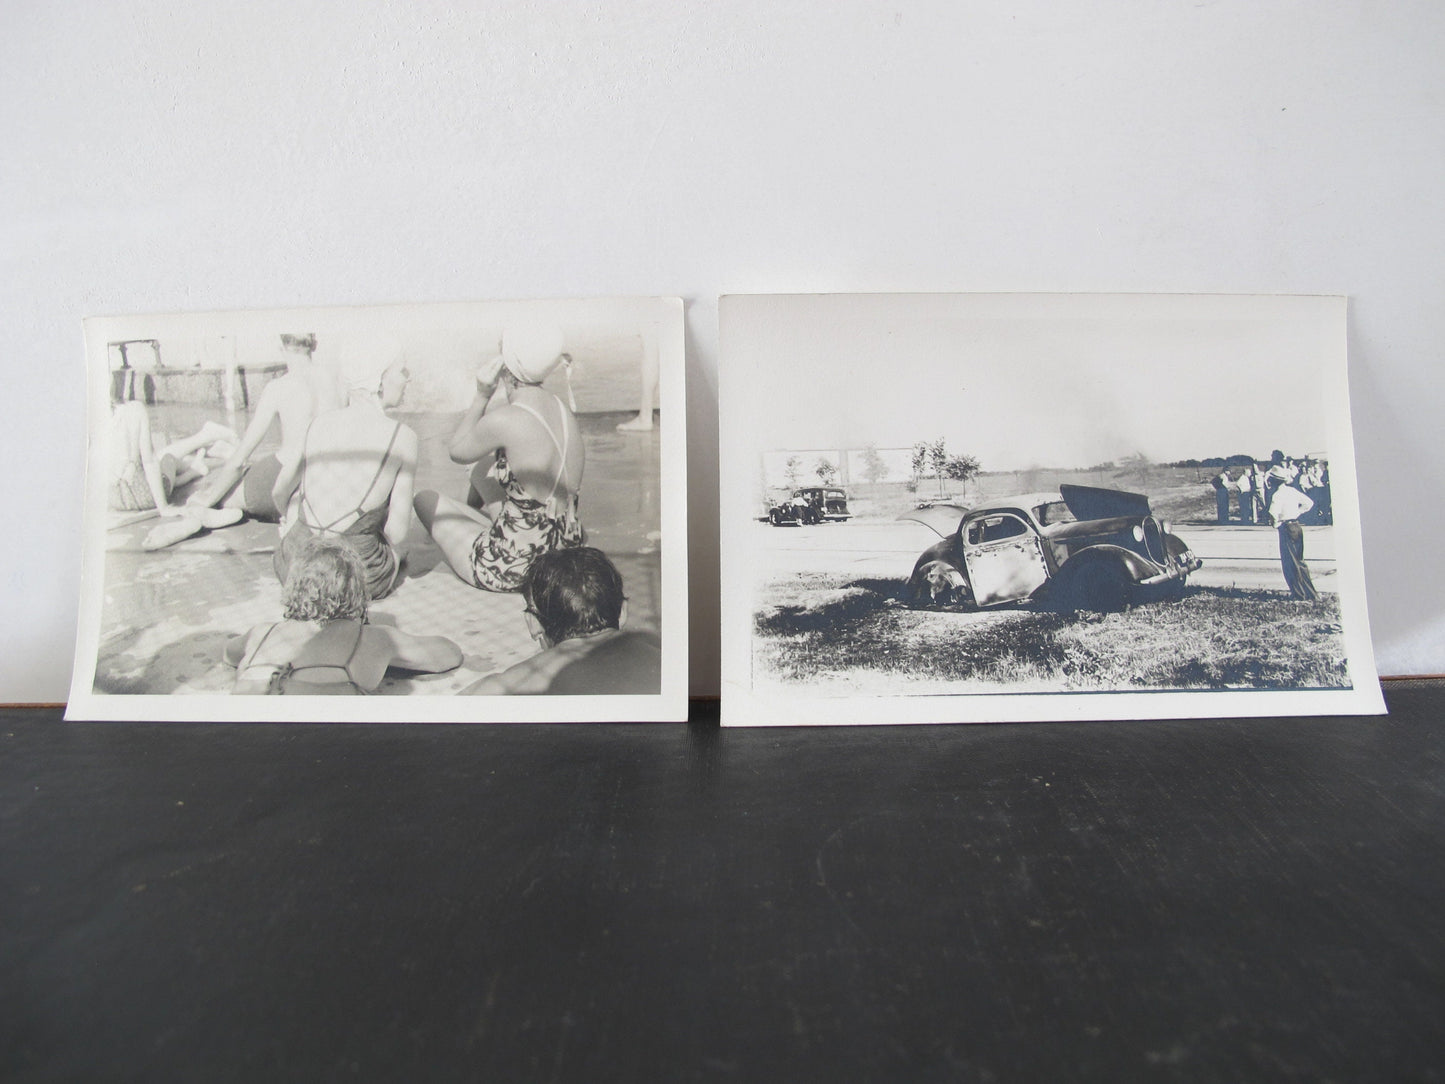 Pair Nitrate Silver Photographs 1940s Beach and Car Crash Fire Original Print